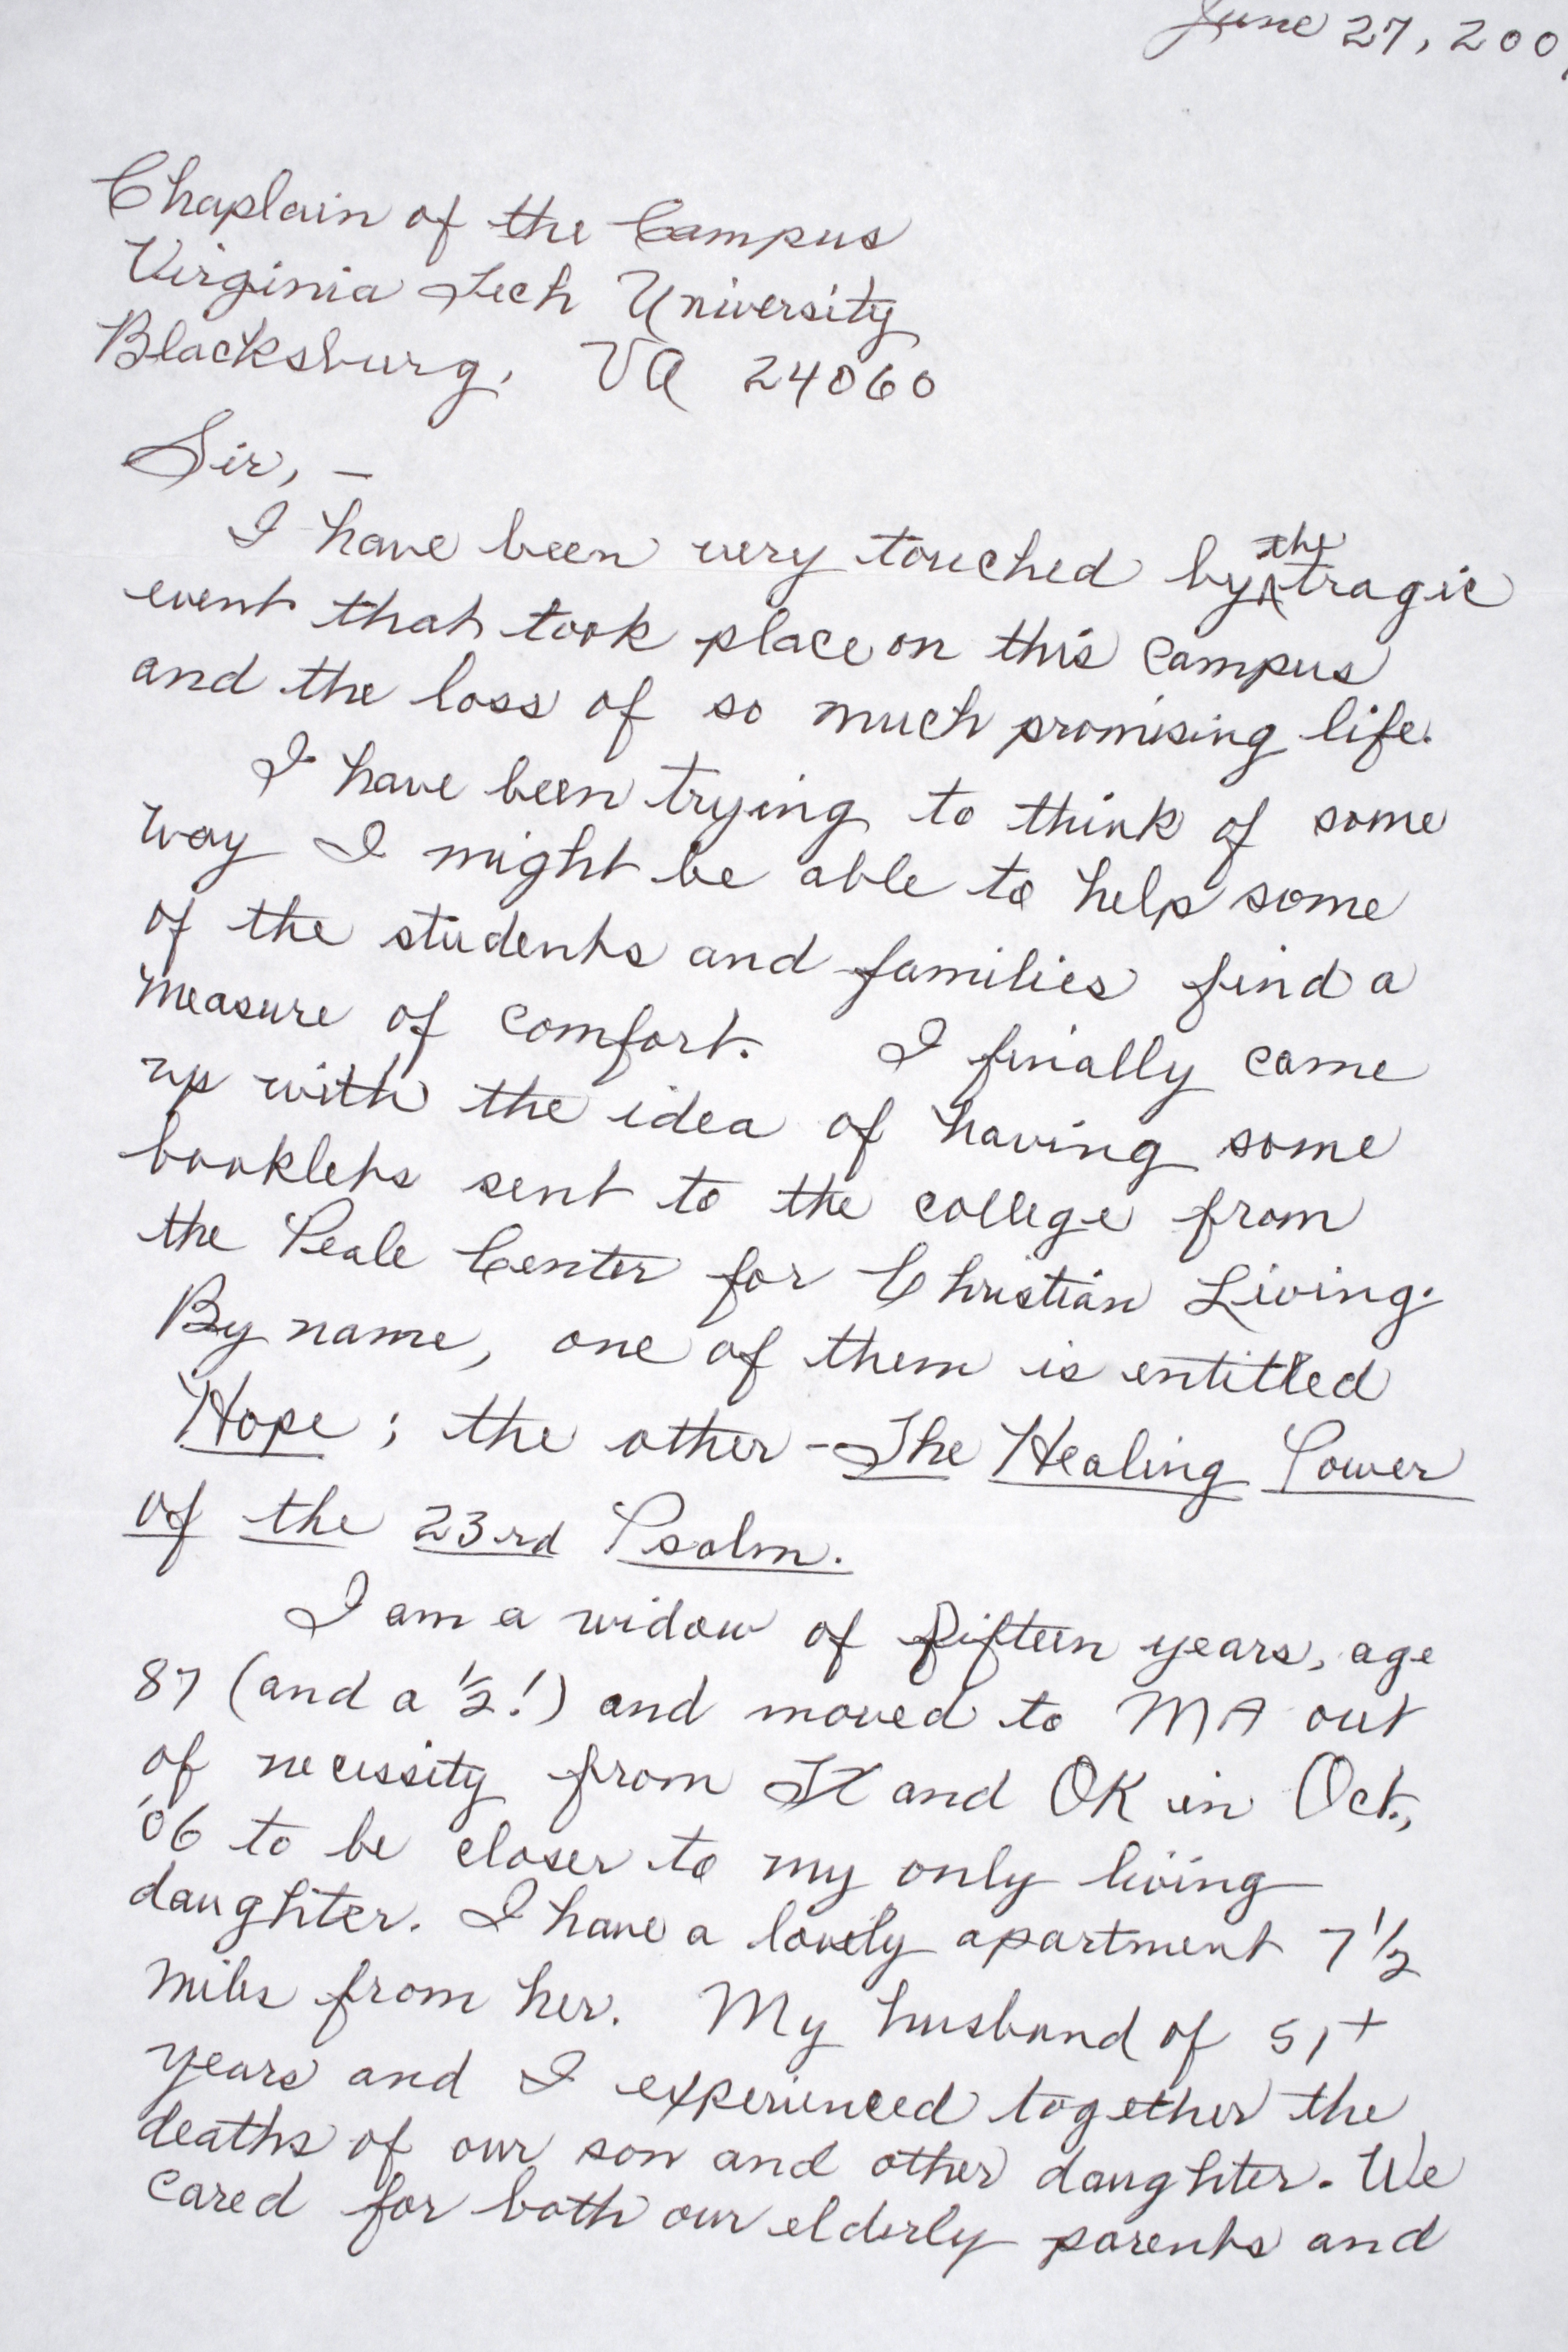 handwritten cover letter format